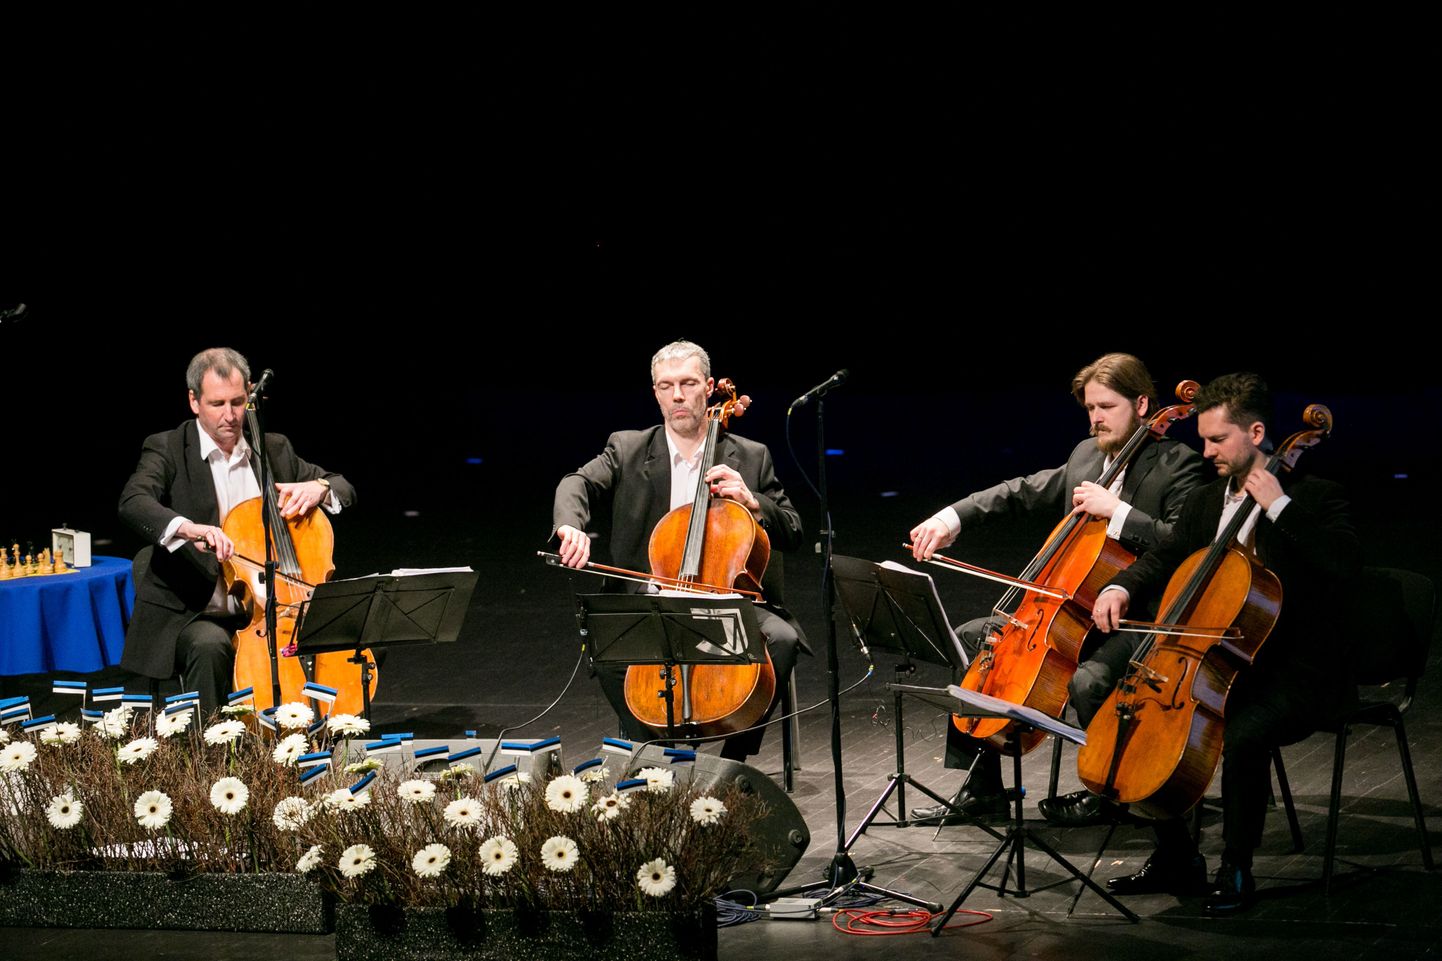 Festival lõpeb kontserdiga Valka kultuurikeskuses, kus esineb ka tšellokvartett C-Jam Eestist.